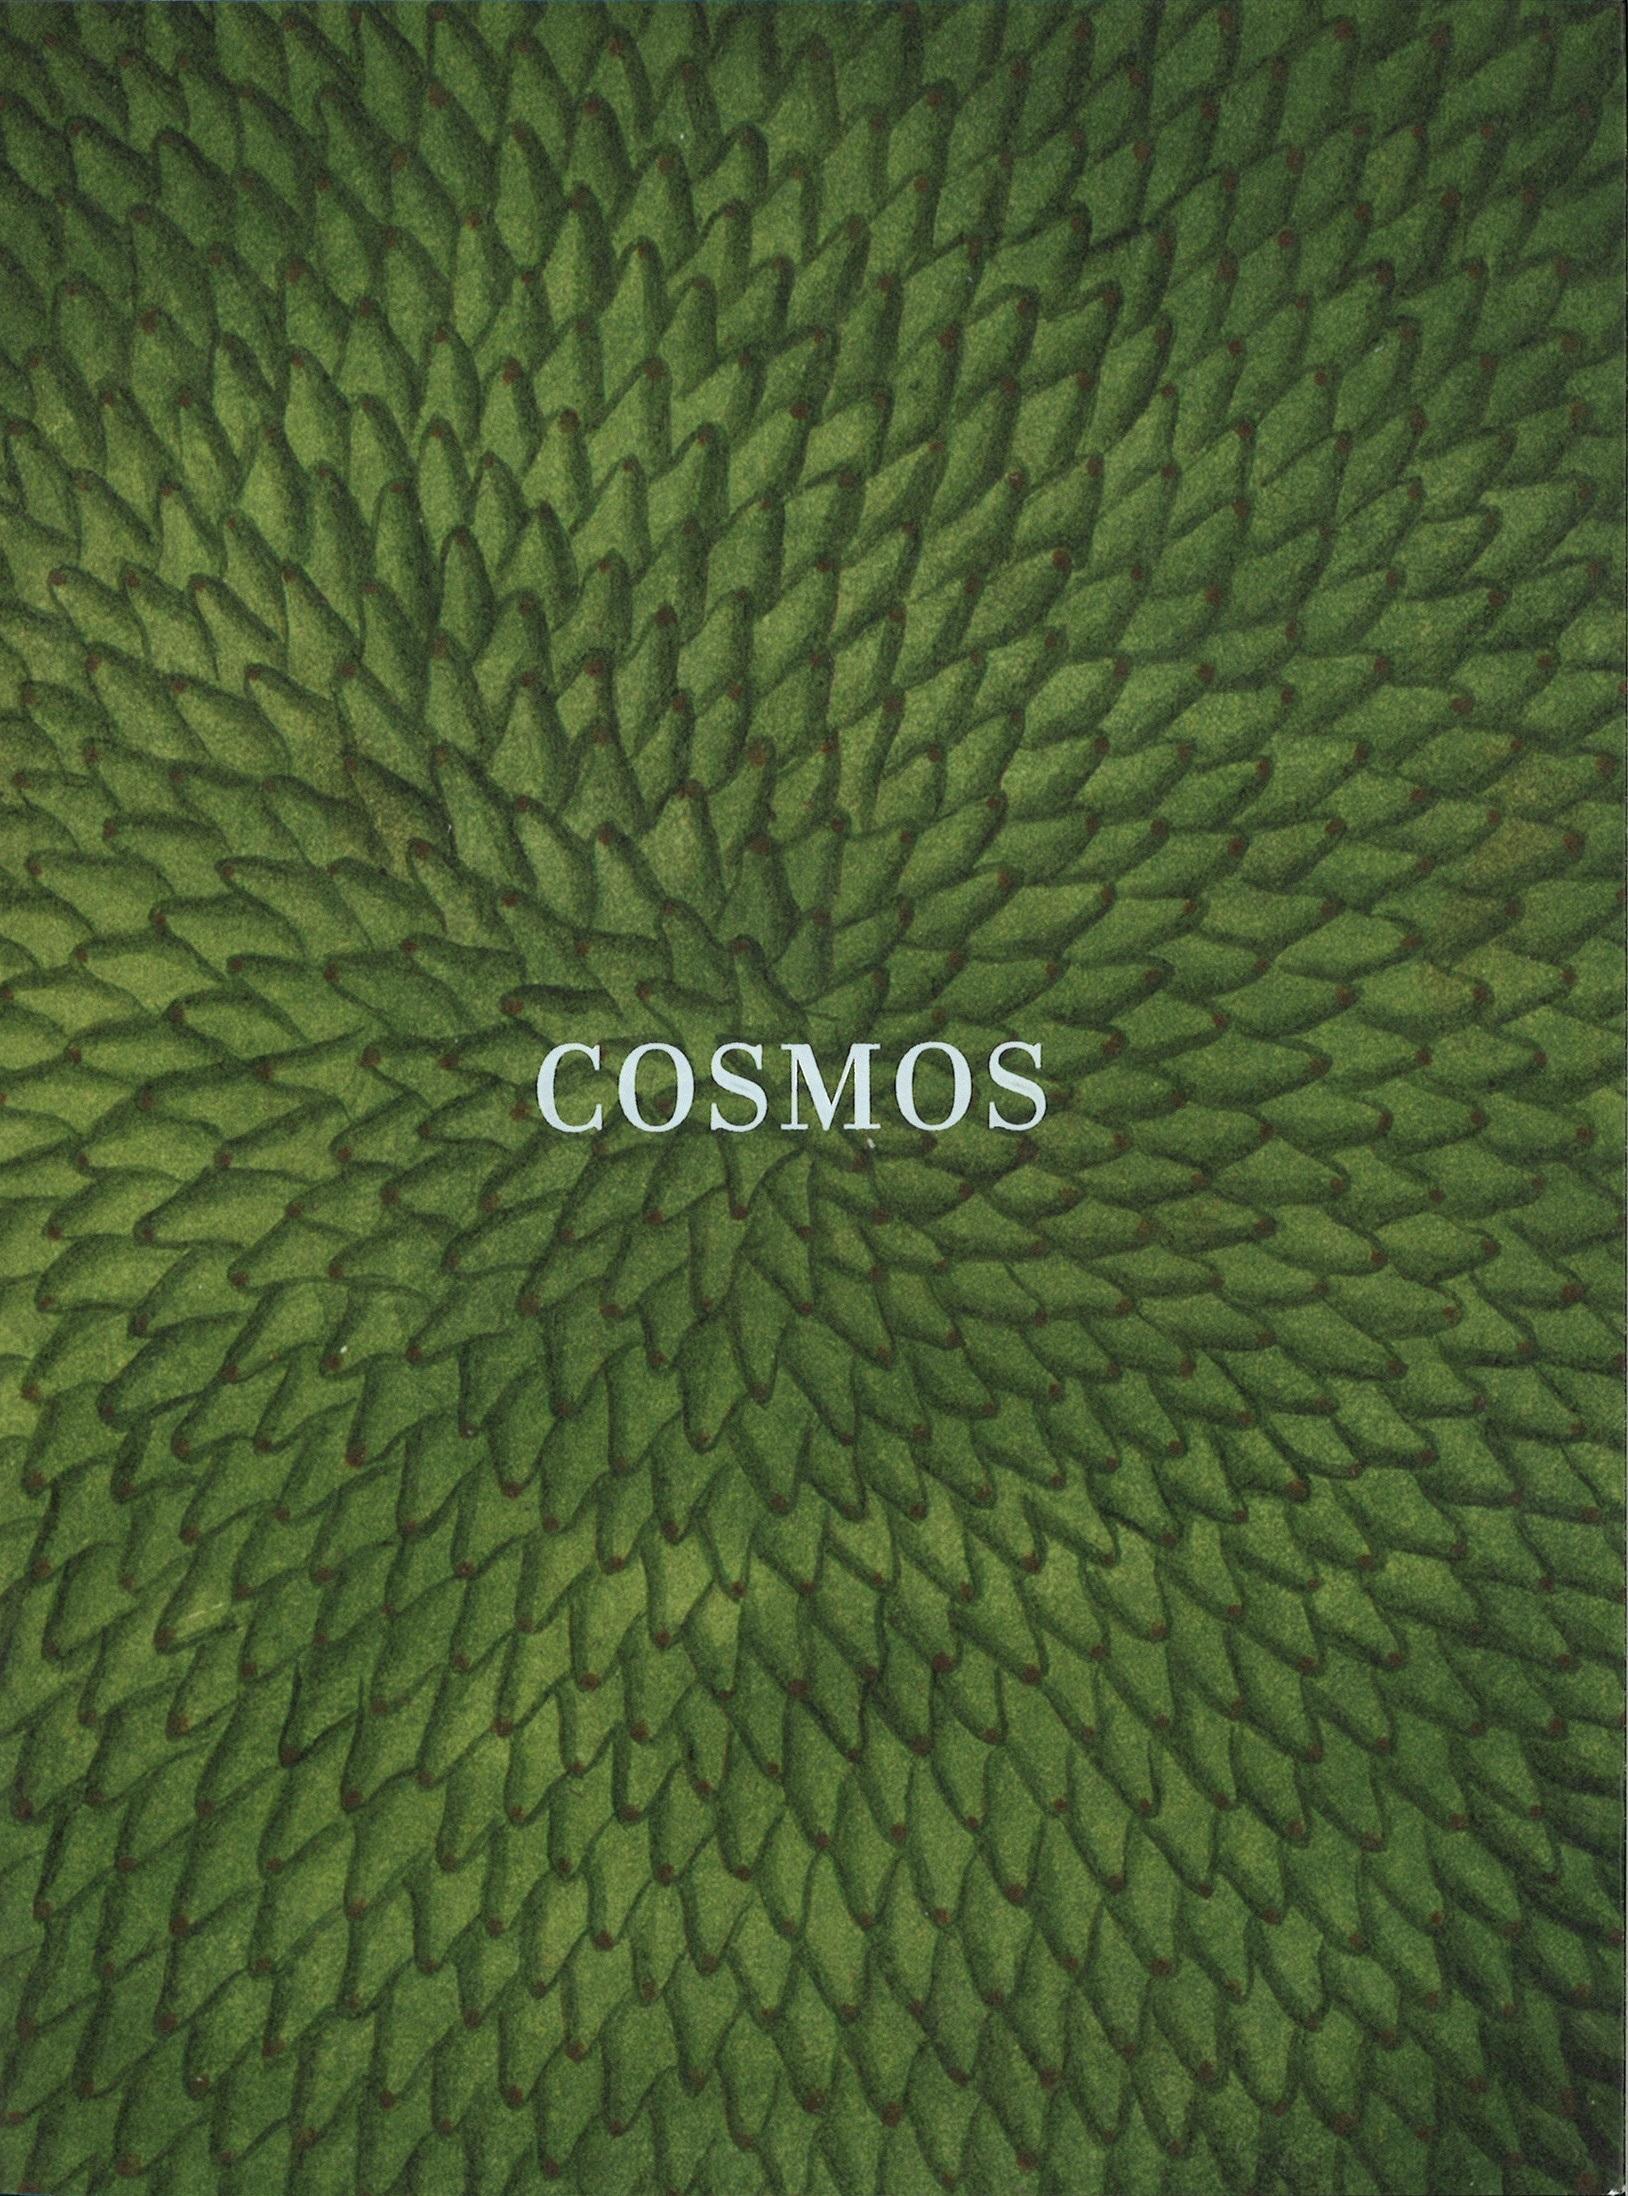 Cosmos "Catálogo Exposición Biblioteca Nacional (Del 19 de Marzo al 9 de Septiembre de 2018)"